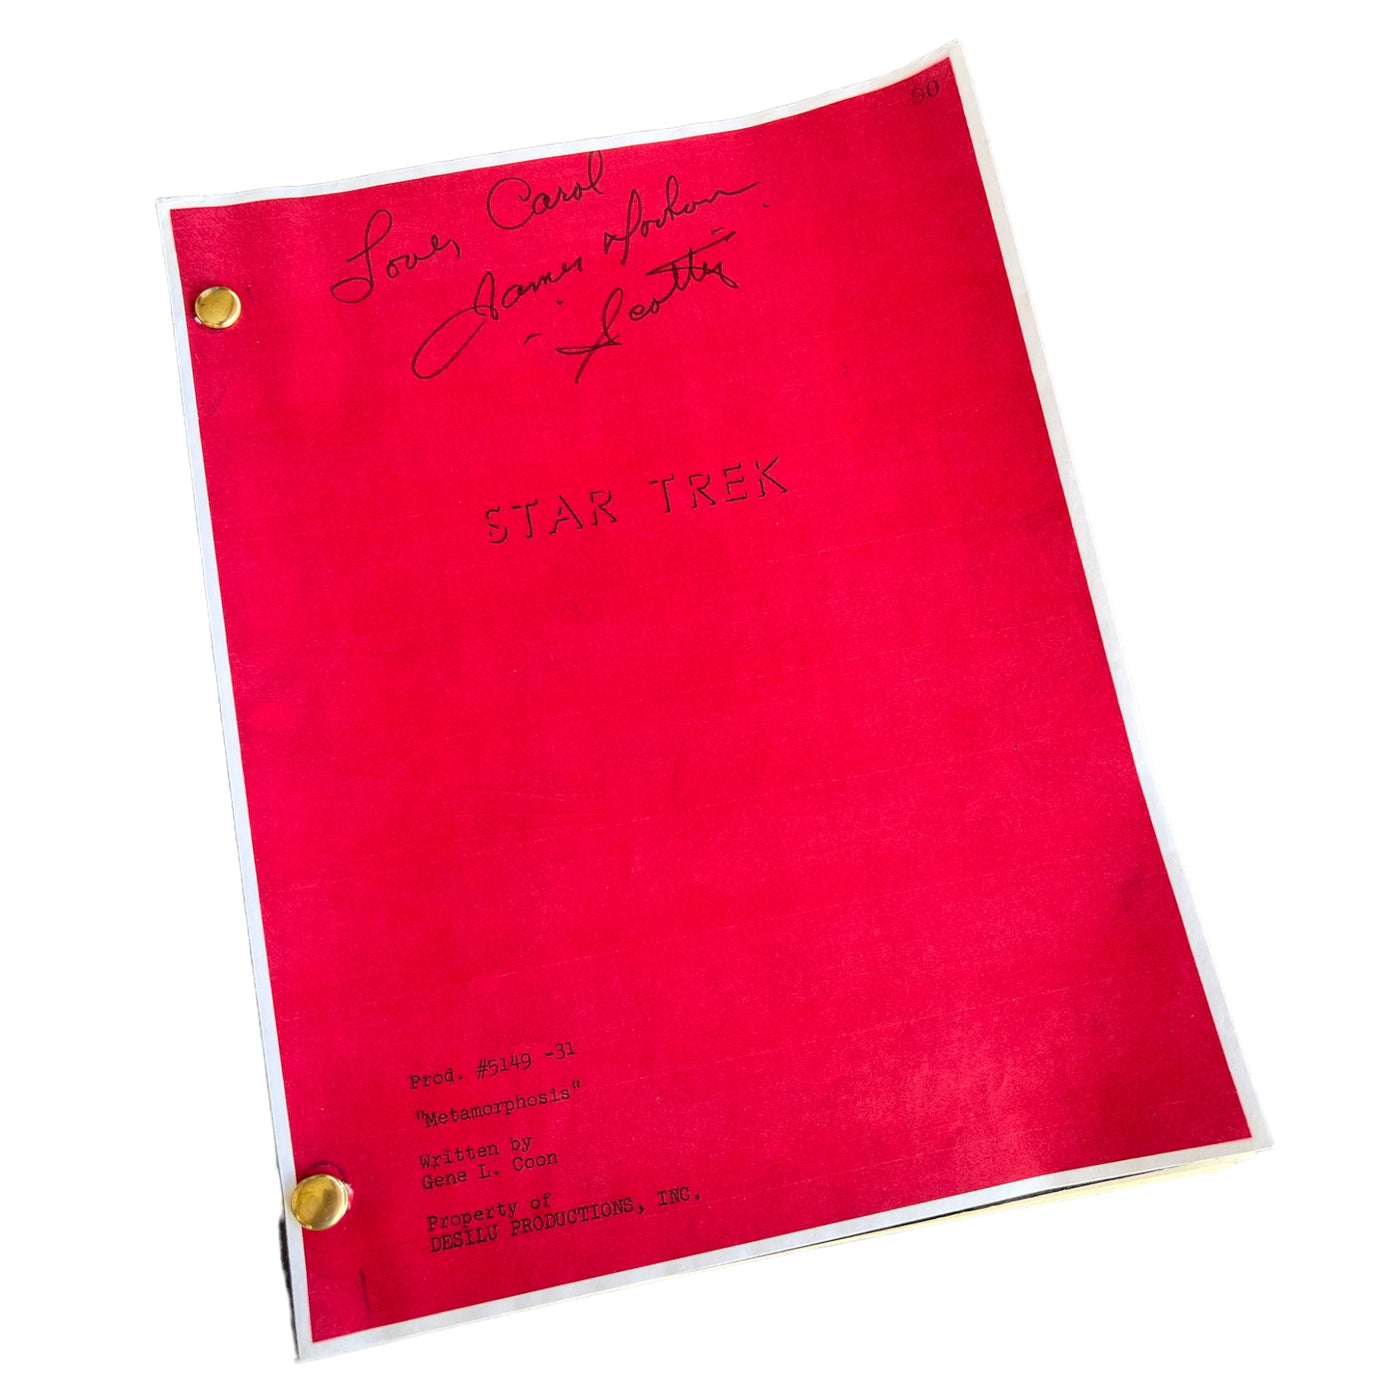 Star Trek – the original series vintage script "Metamorphosis"